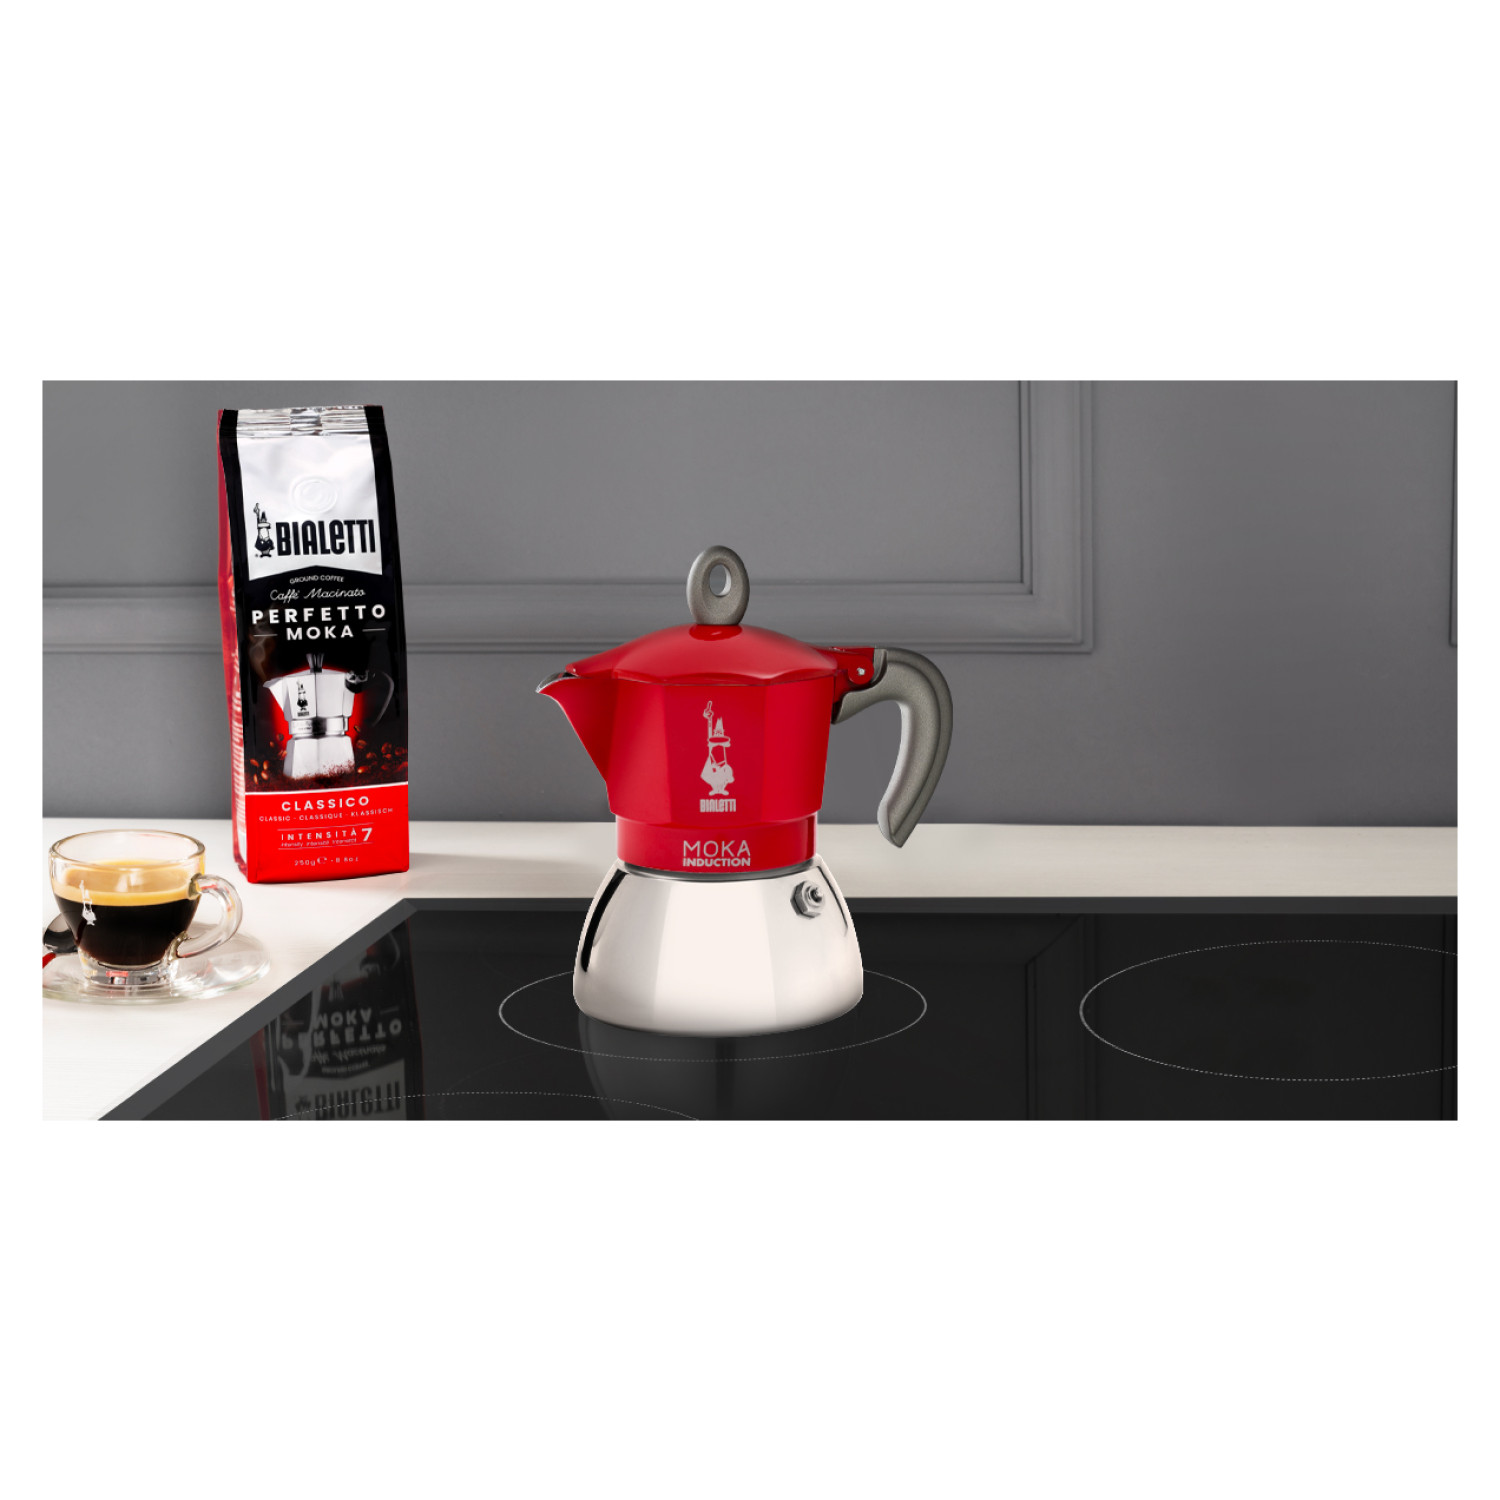 Induction 2 Moka Espressokocher New RED Rot/Silber BIALETTI Tassen für